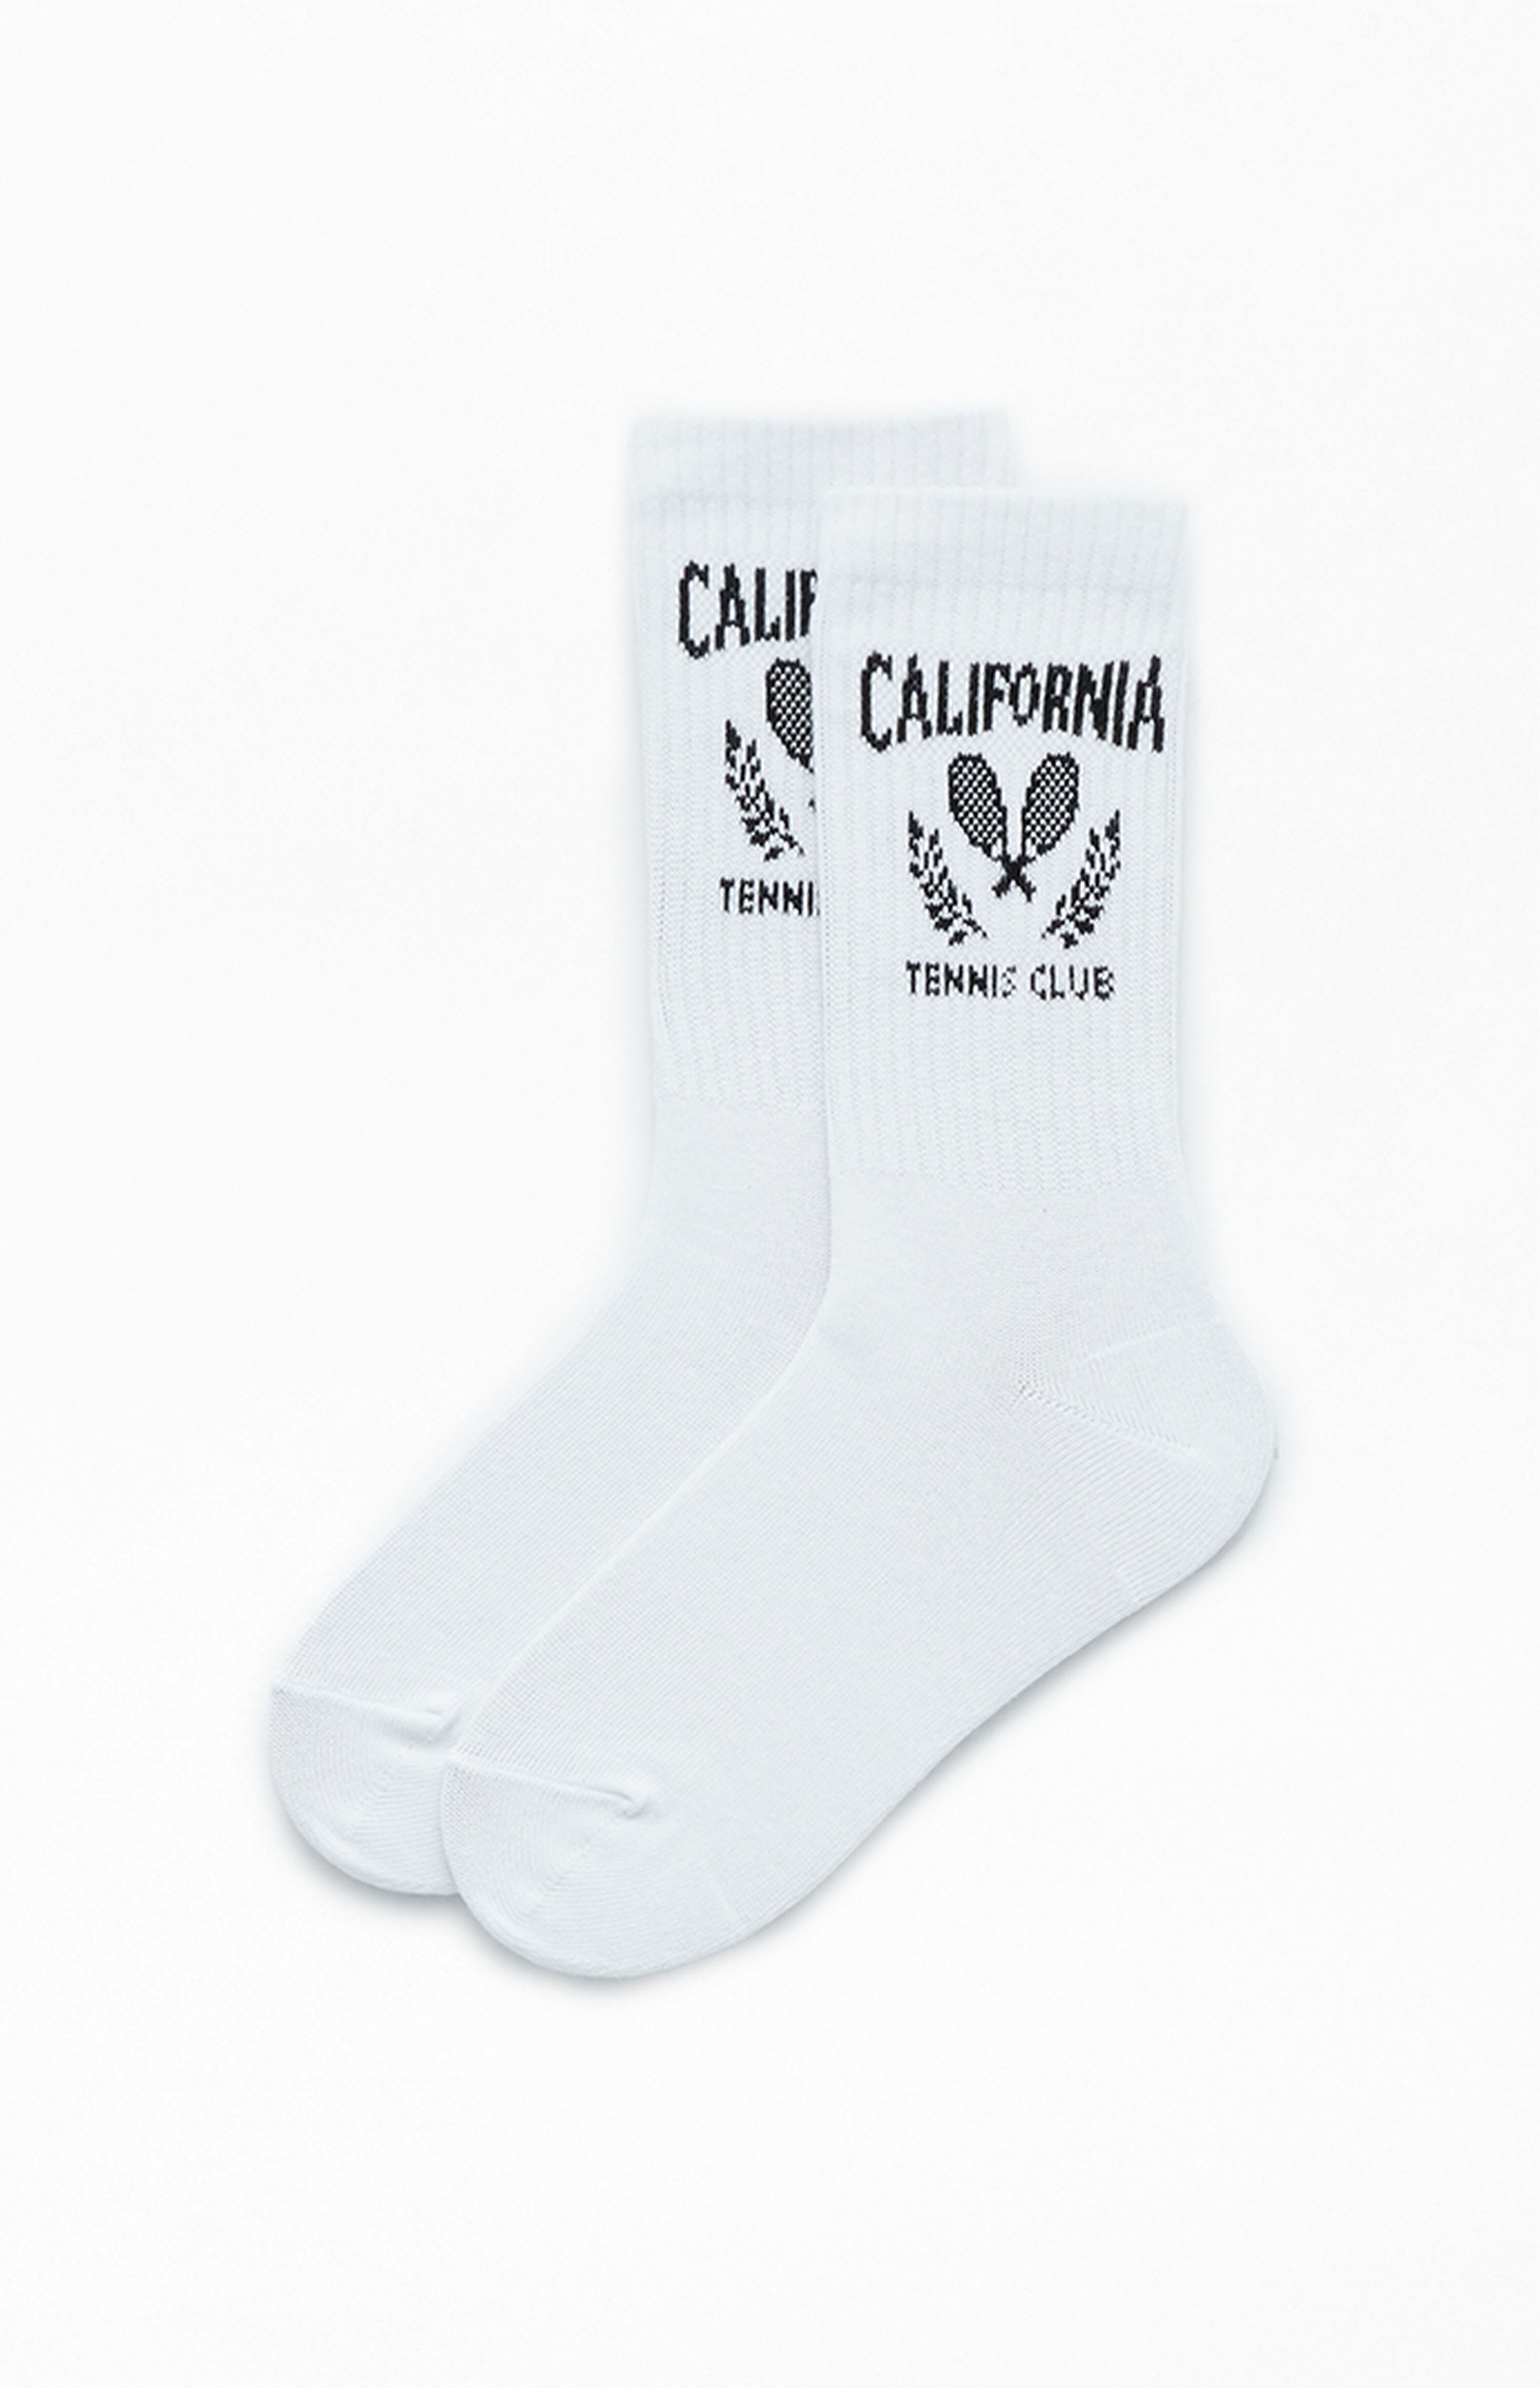 PacSun California Tennis Club Crew Socks | PacSun